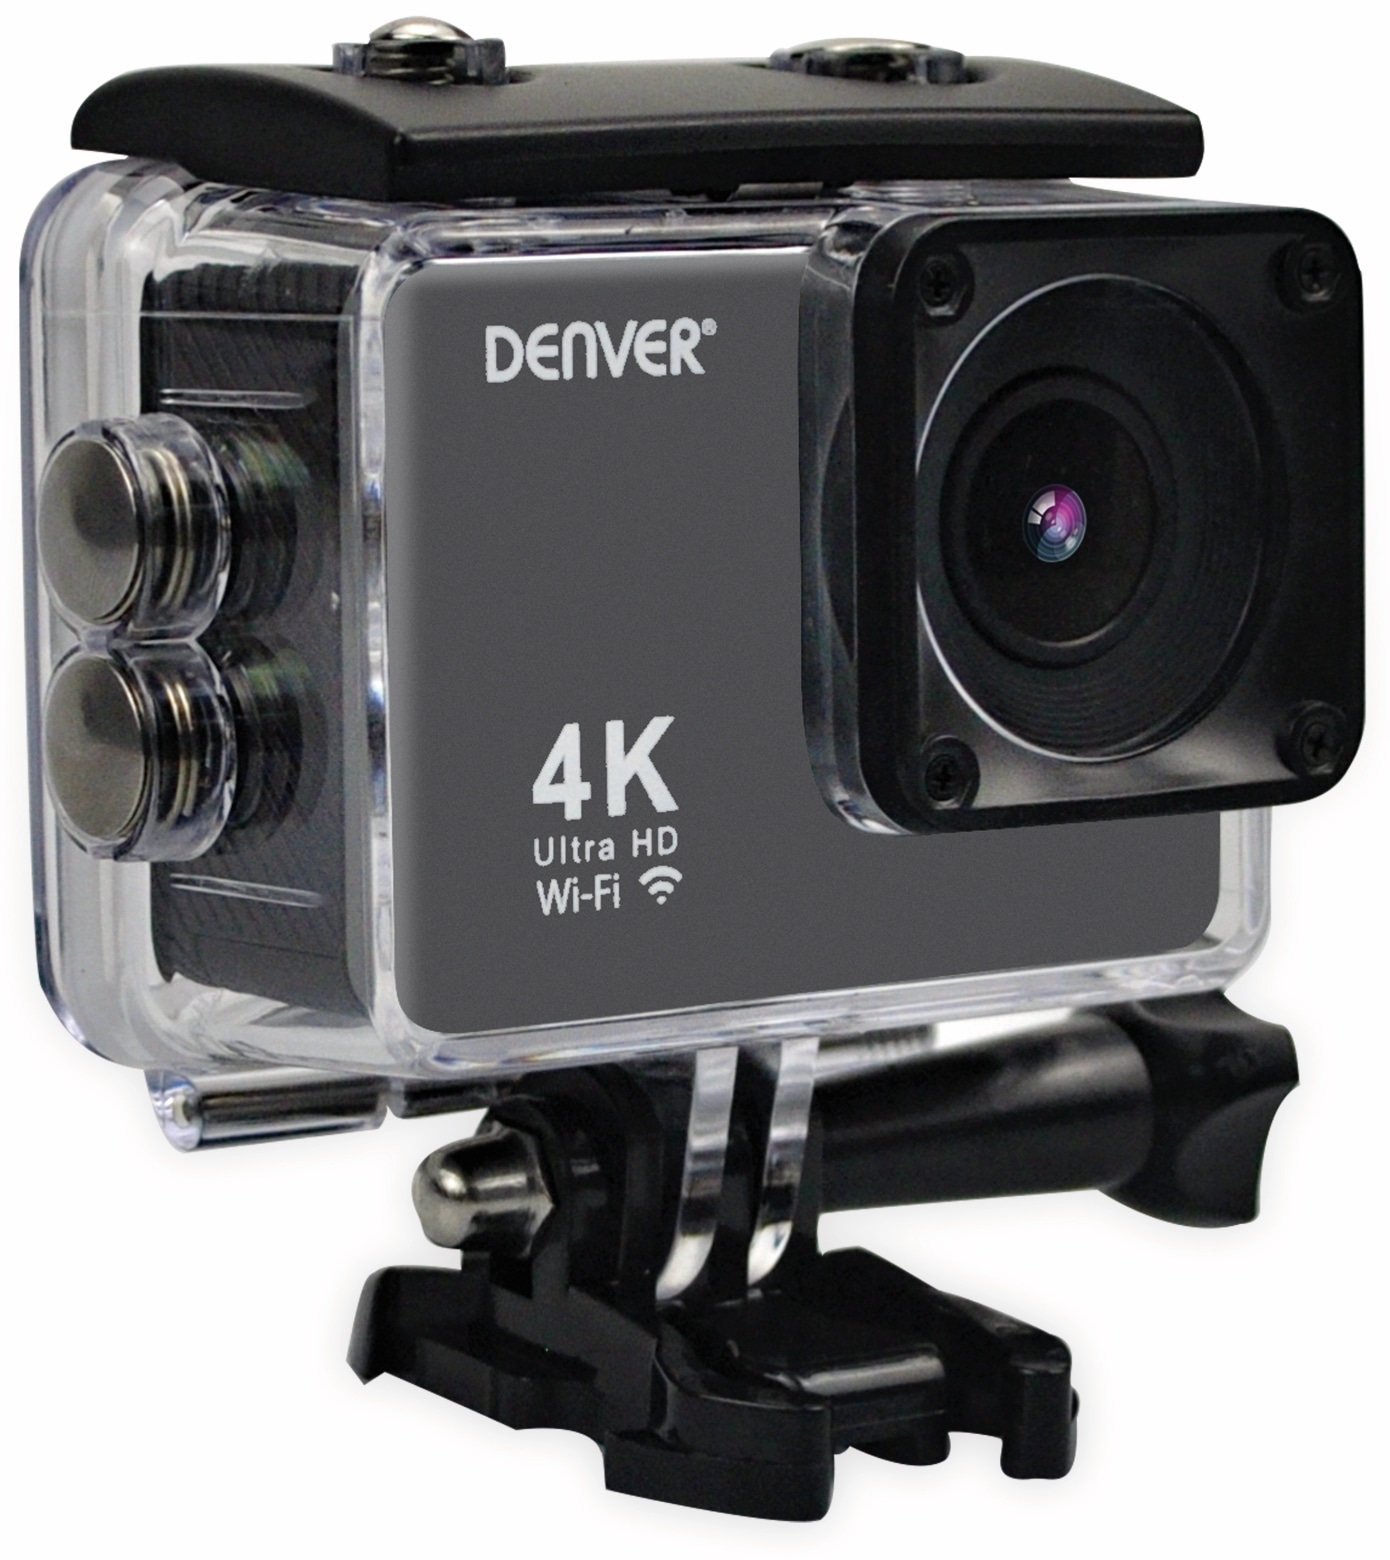 DENVER Actioncam ACK-8062W, 4K